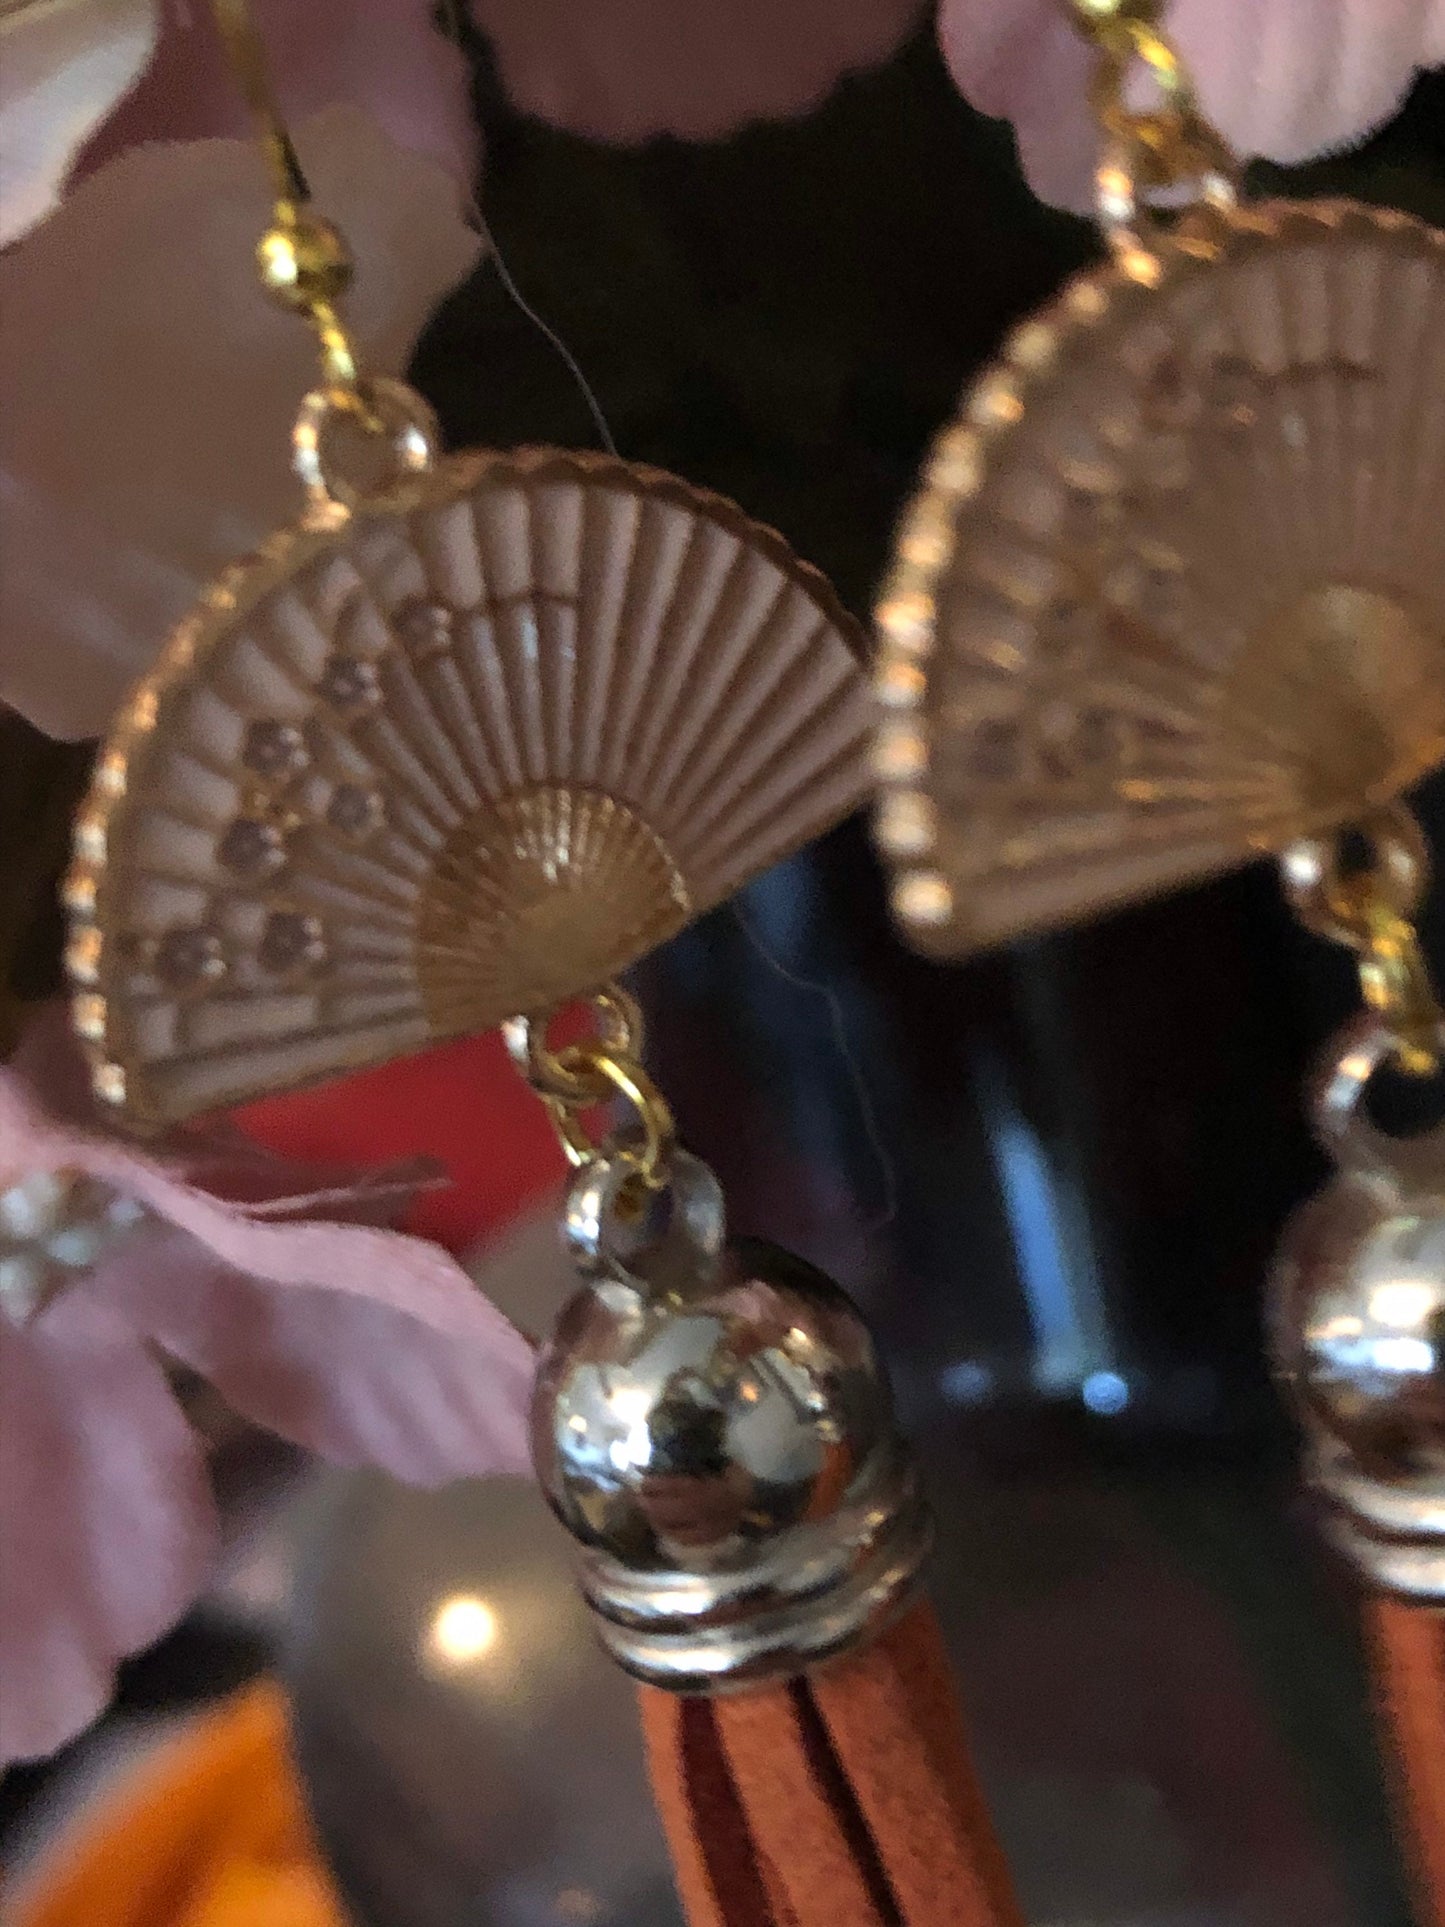 antique Vintage style gold tone oriental Chinese Japanese orange tassel fan earrings pierced